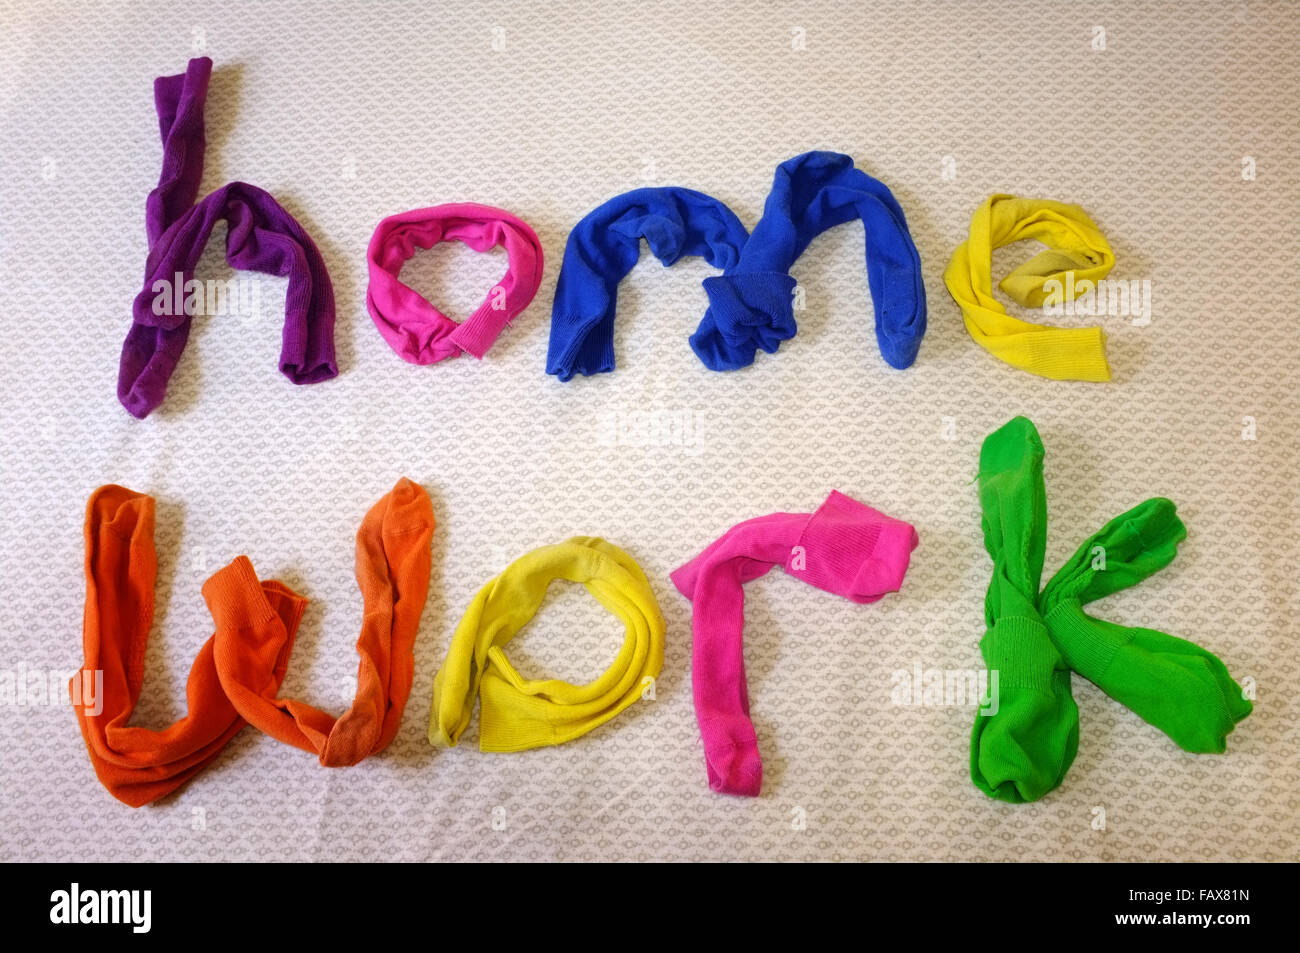 Le parole home lavori realizzati in calze colorate posa su un piumone. Foto Stock